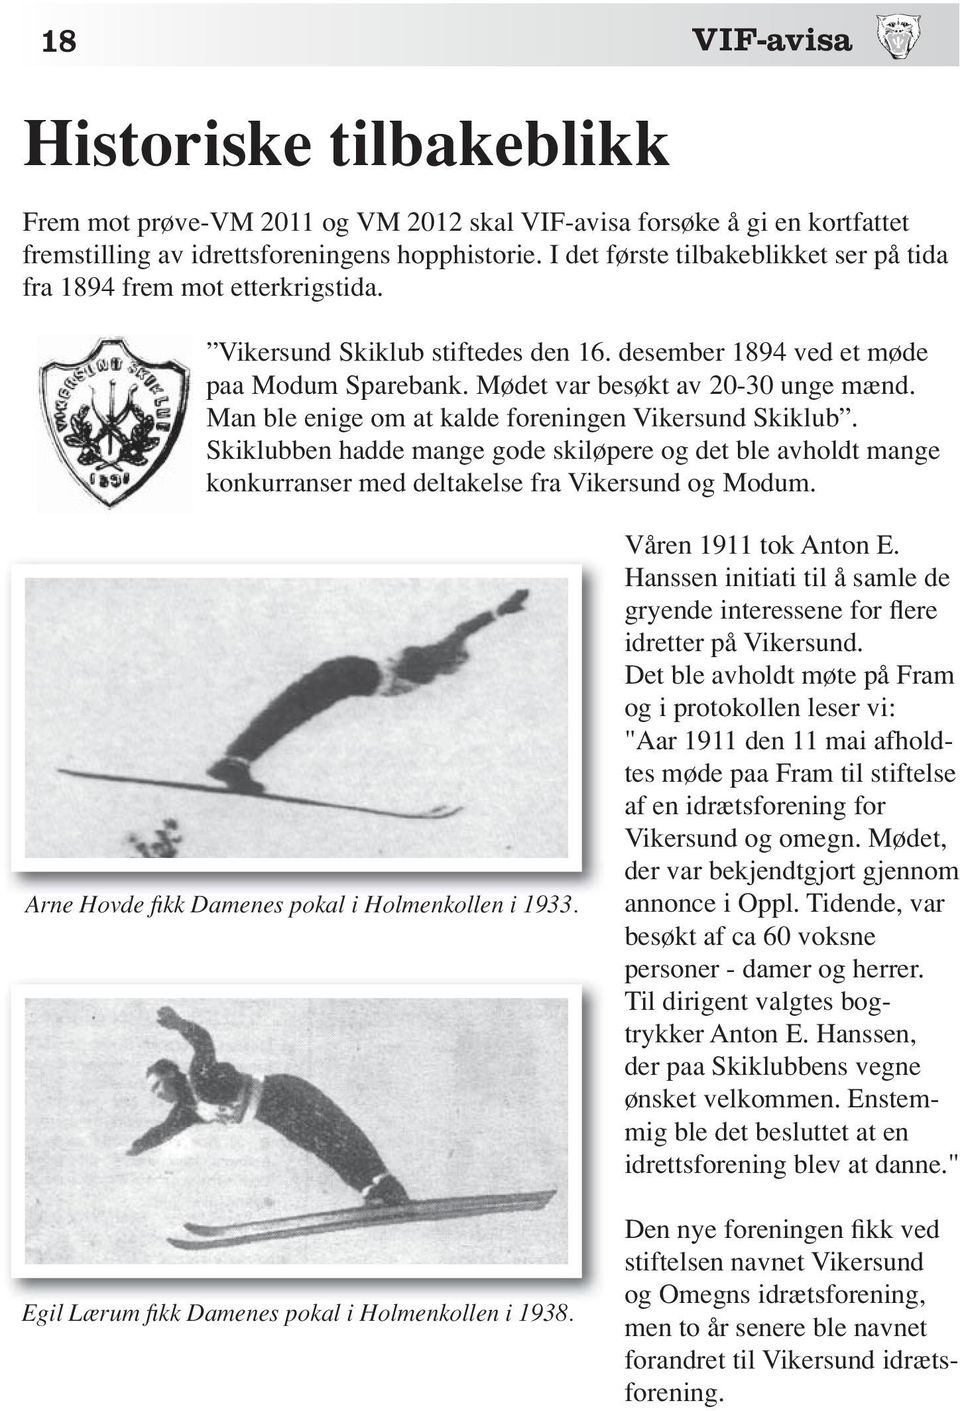 Man ble enige om at kalde foreningen Vikersund Skiklub. Skiklubben hadde mange gode skiløpere og det ble avholdt mange konkurranser med deltakelse fra Vikersund og Modum.